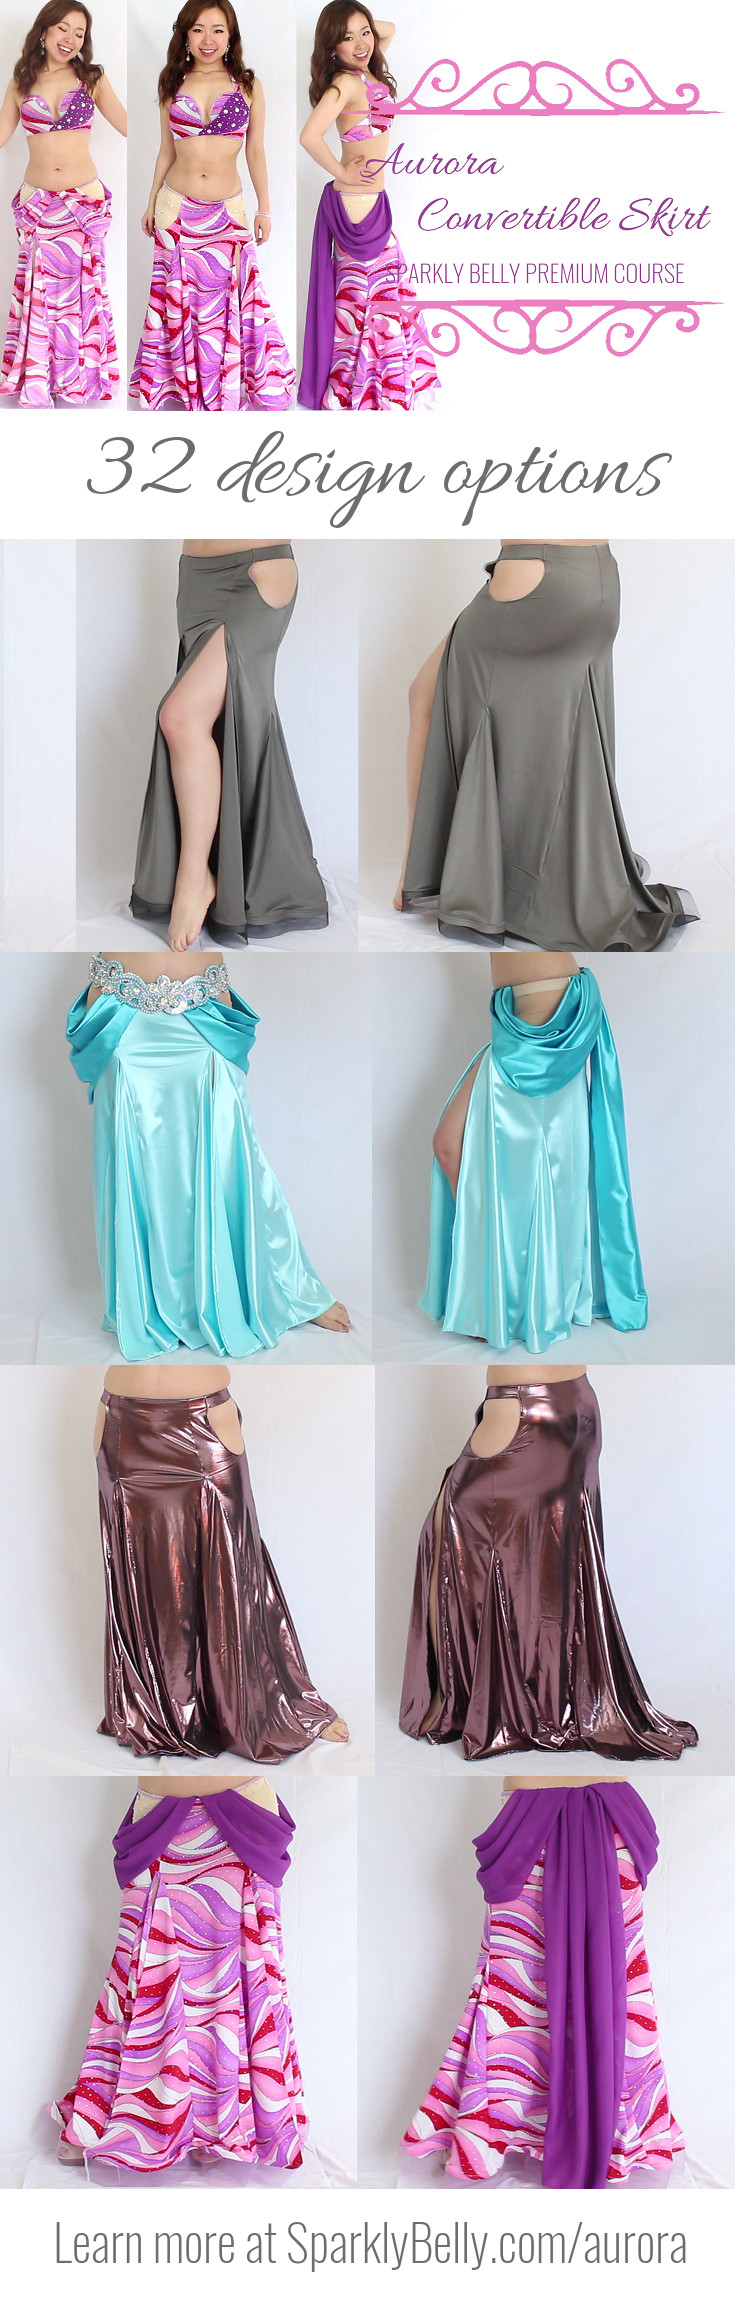 Aurora Convertible Skirt Premium Course 32 design options